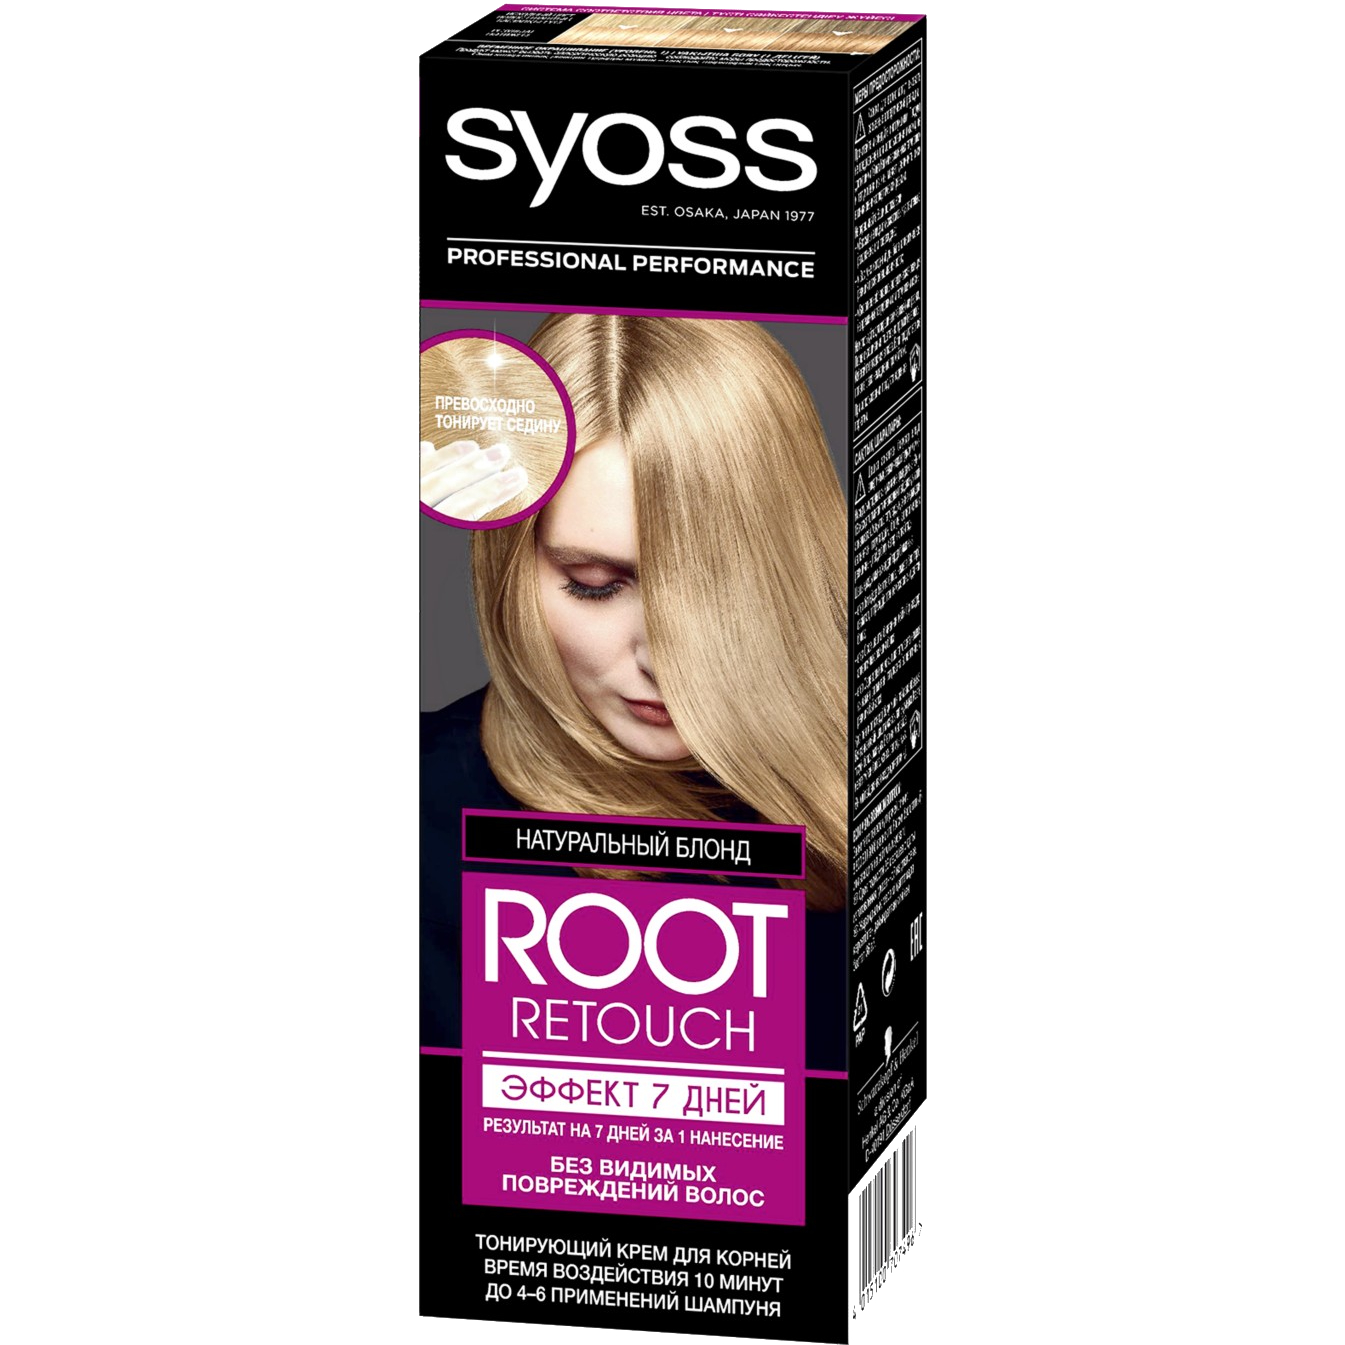 Крем для волос Syoss Root Retoucher тонирующий Эффект 7 дней оттенок 8.0 Натуральный Блонд, 60 мл крем для волос syoss root retoucher тонирующий эффект 7 дней оттенок 6 68 шоколадный каштановый 60 мл